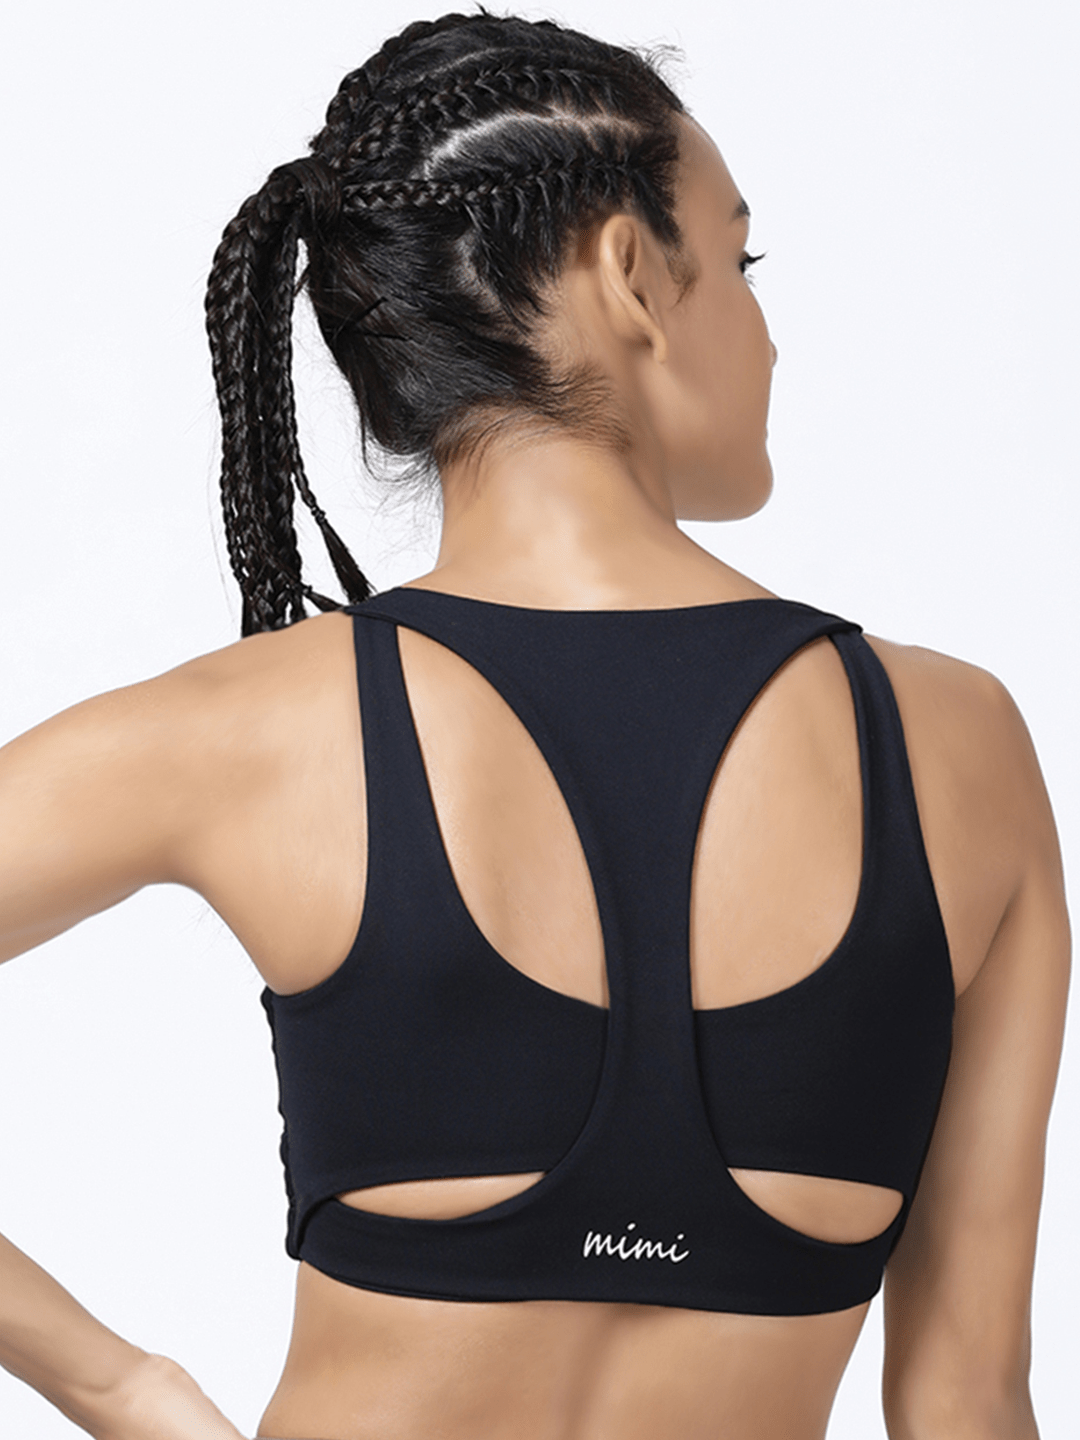 High Support Racer Back Nylon Sports Bra For Women – Black